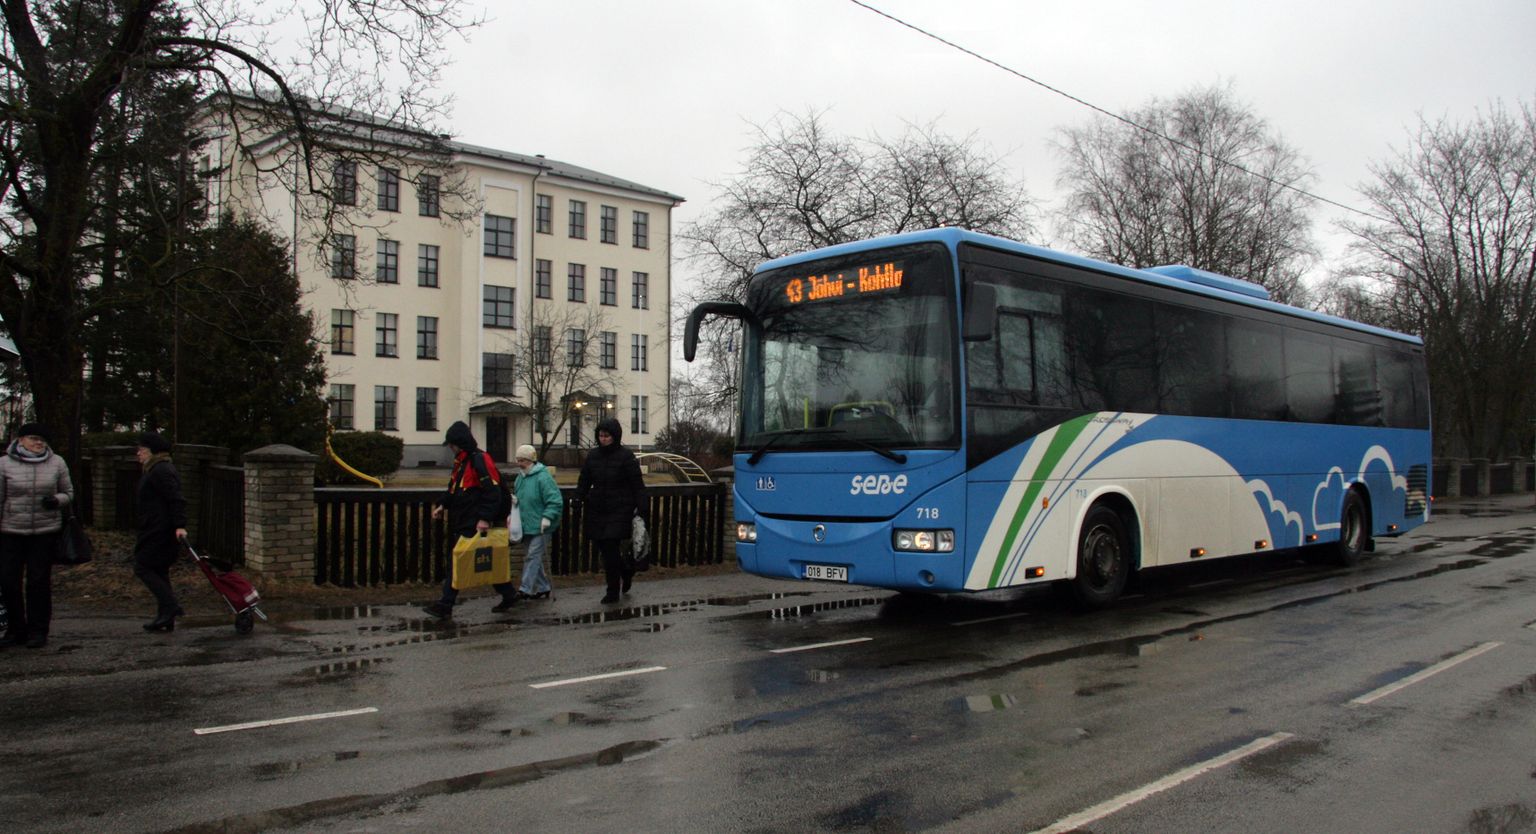 Кохтла-ныммеский автобус, который начиная с Йыхви берет пассажиров на каждой остановке, очень перегружен; временная линия №44 поможет несколько смягчить ситуацию.